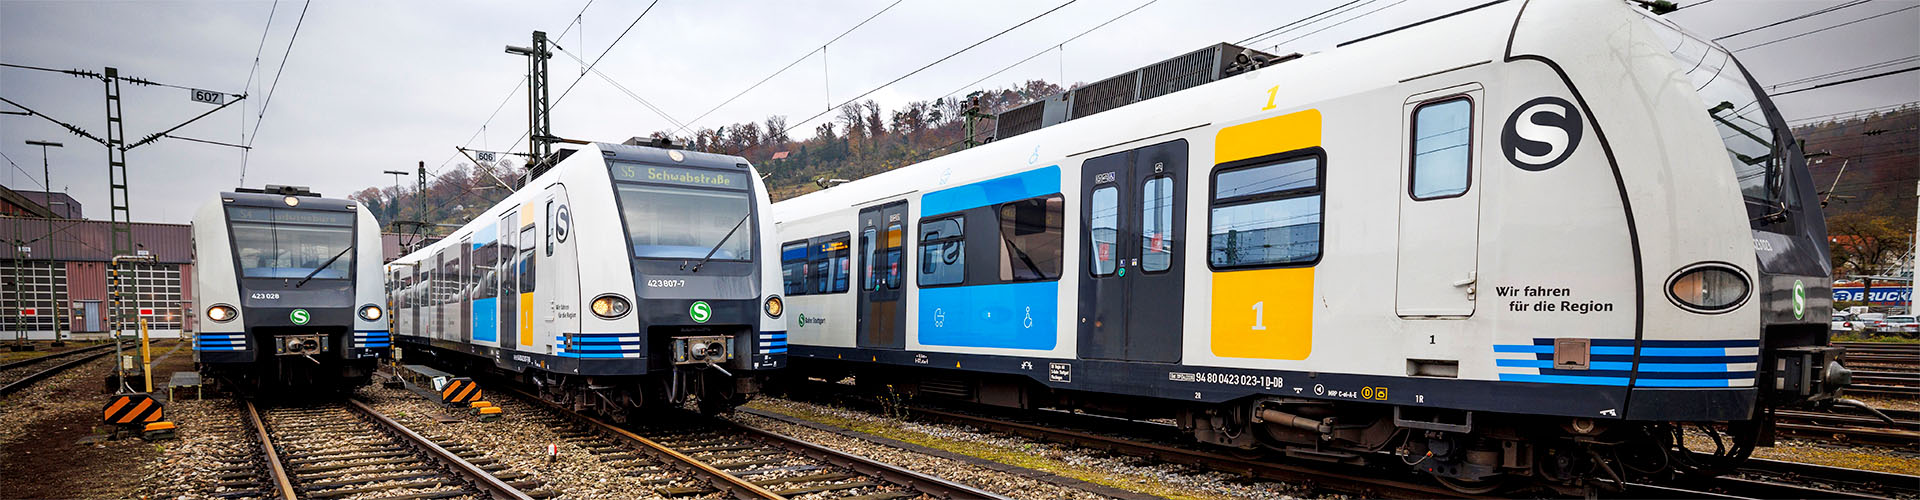 Drei S-Bahn-Fahrzeuge stehen leicht versetzt nebeneinander auf einem Betriebsgelände